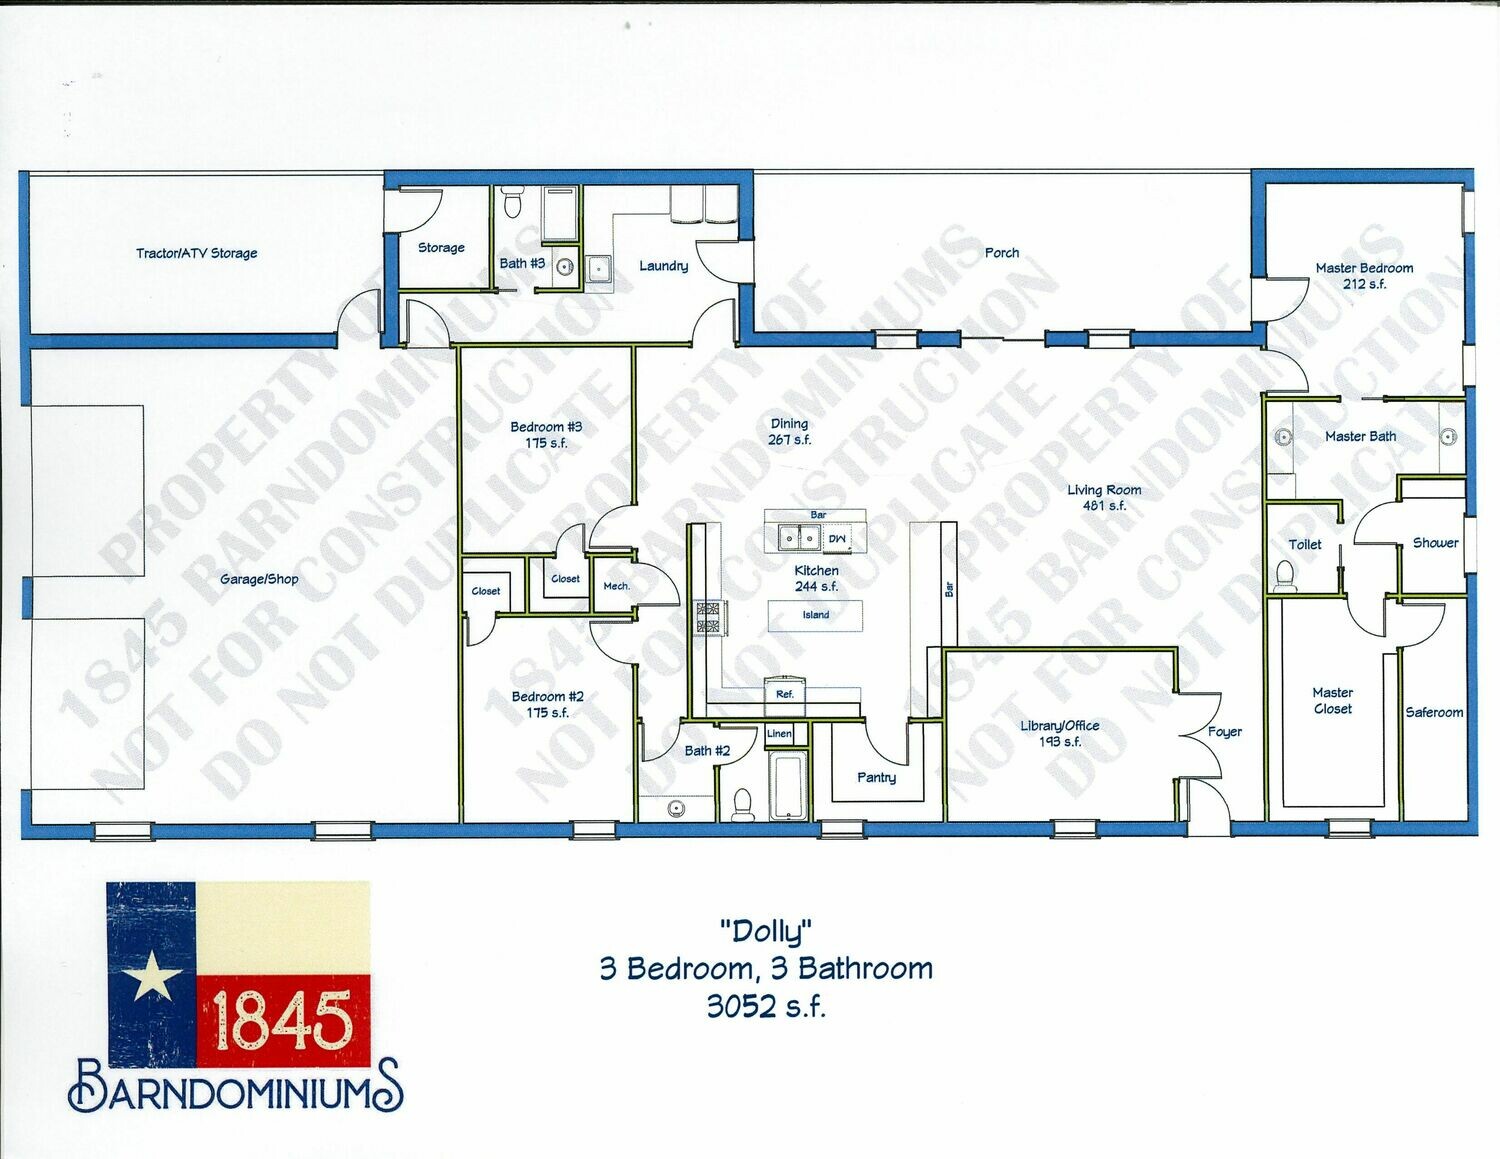 "Dolly" Floor Plan 3 bedroom, 3 bath - 3052 sf